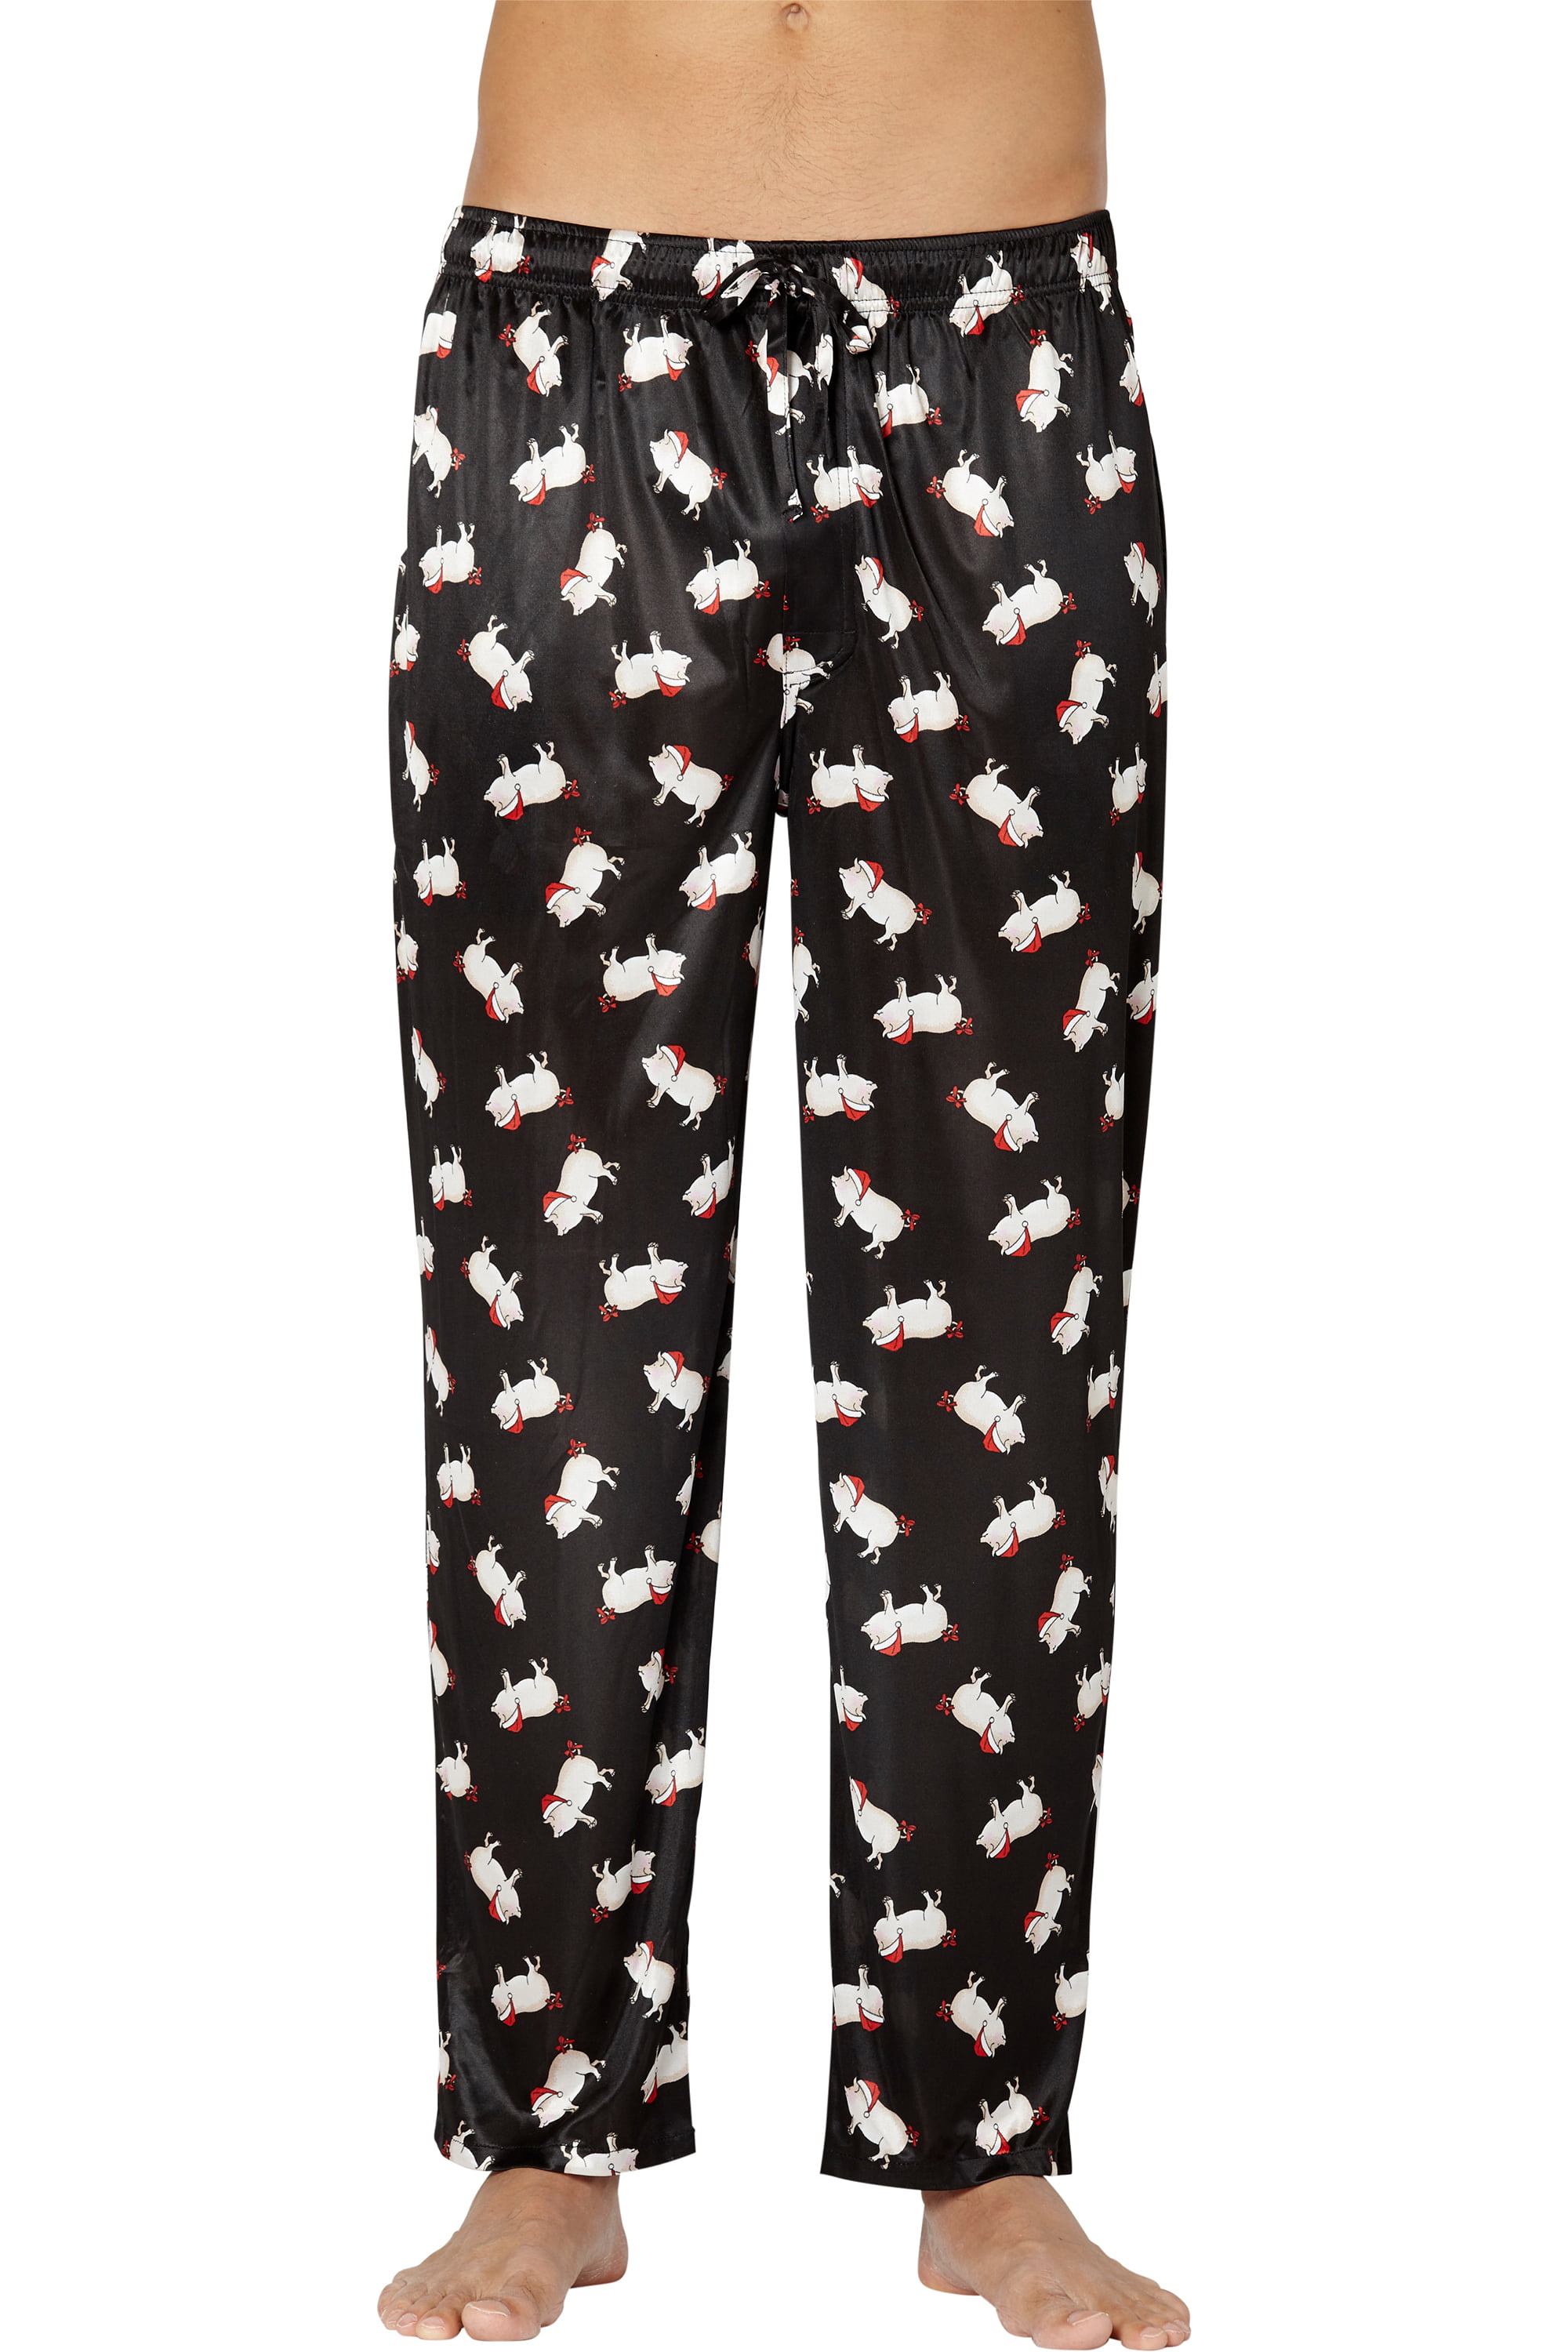 Mens Fun Comfy Pig Printed Pajama Pants, Black, Large | Walmart Canada